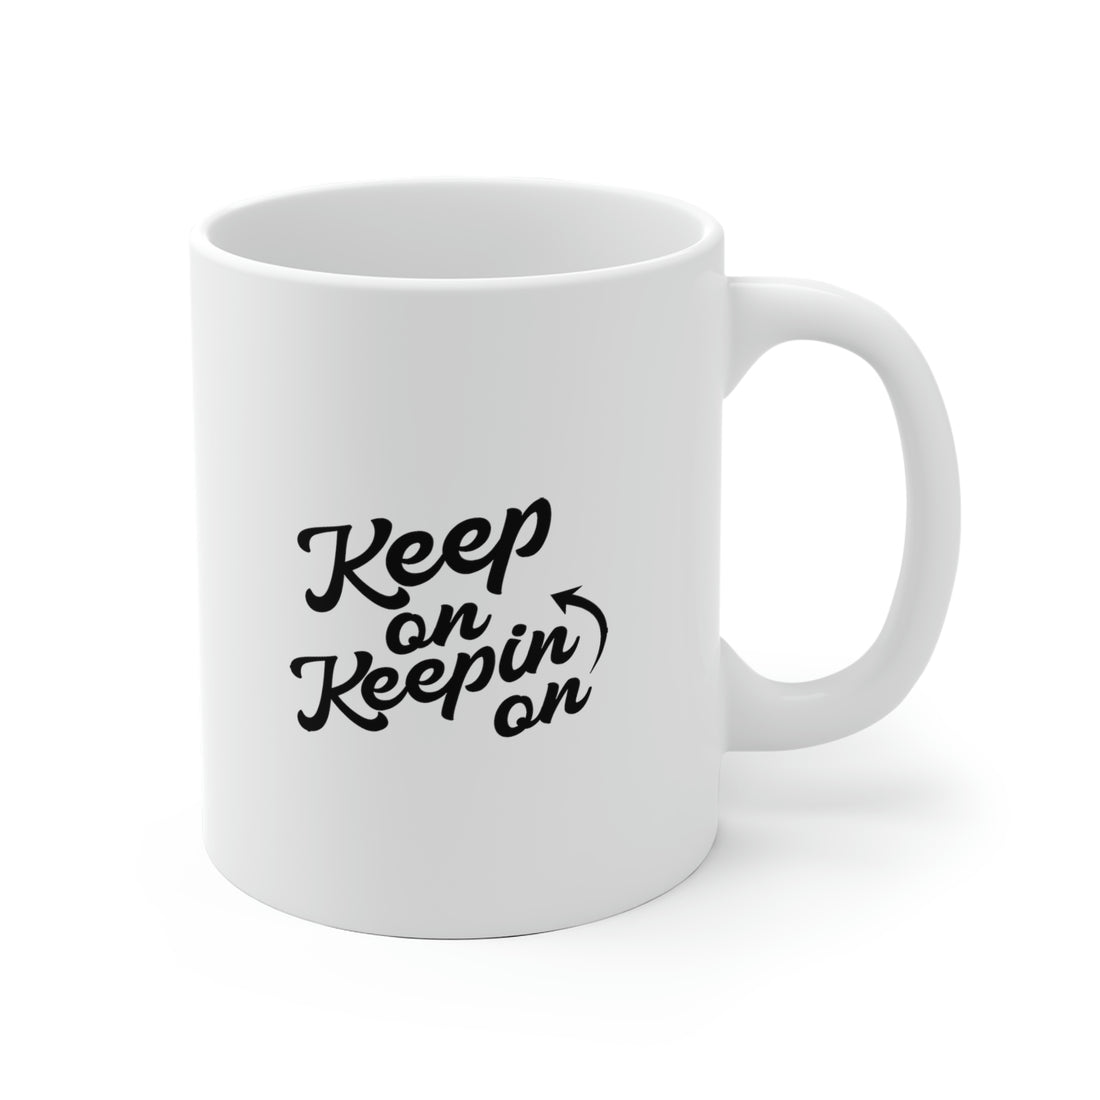 Keep On Keepin On - White Ceramic Mug 2 sizes Available